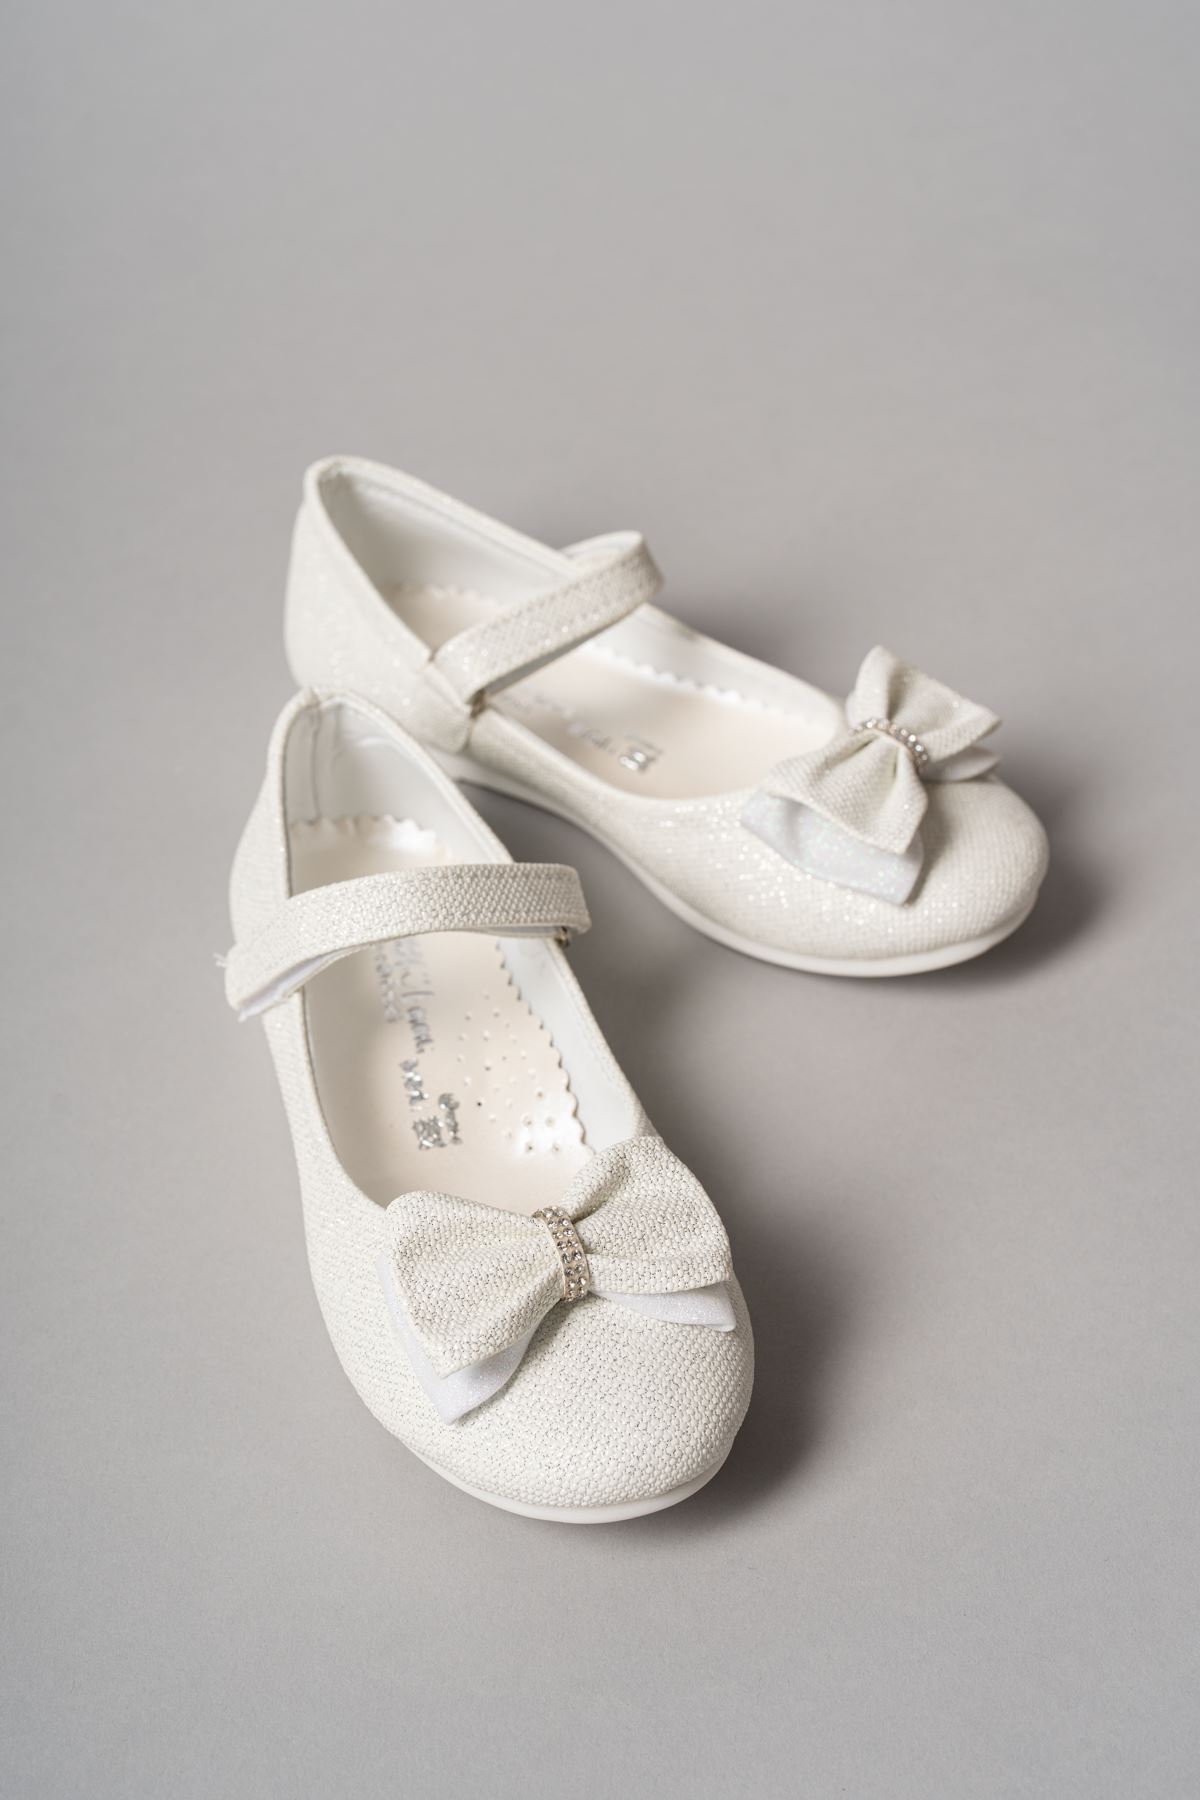 Boğma Fiyonk Sedef Star Kız Bebe Ayakkabı